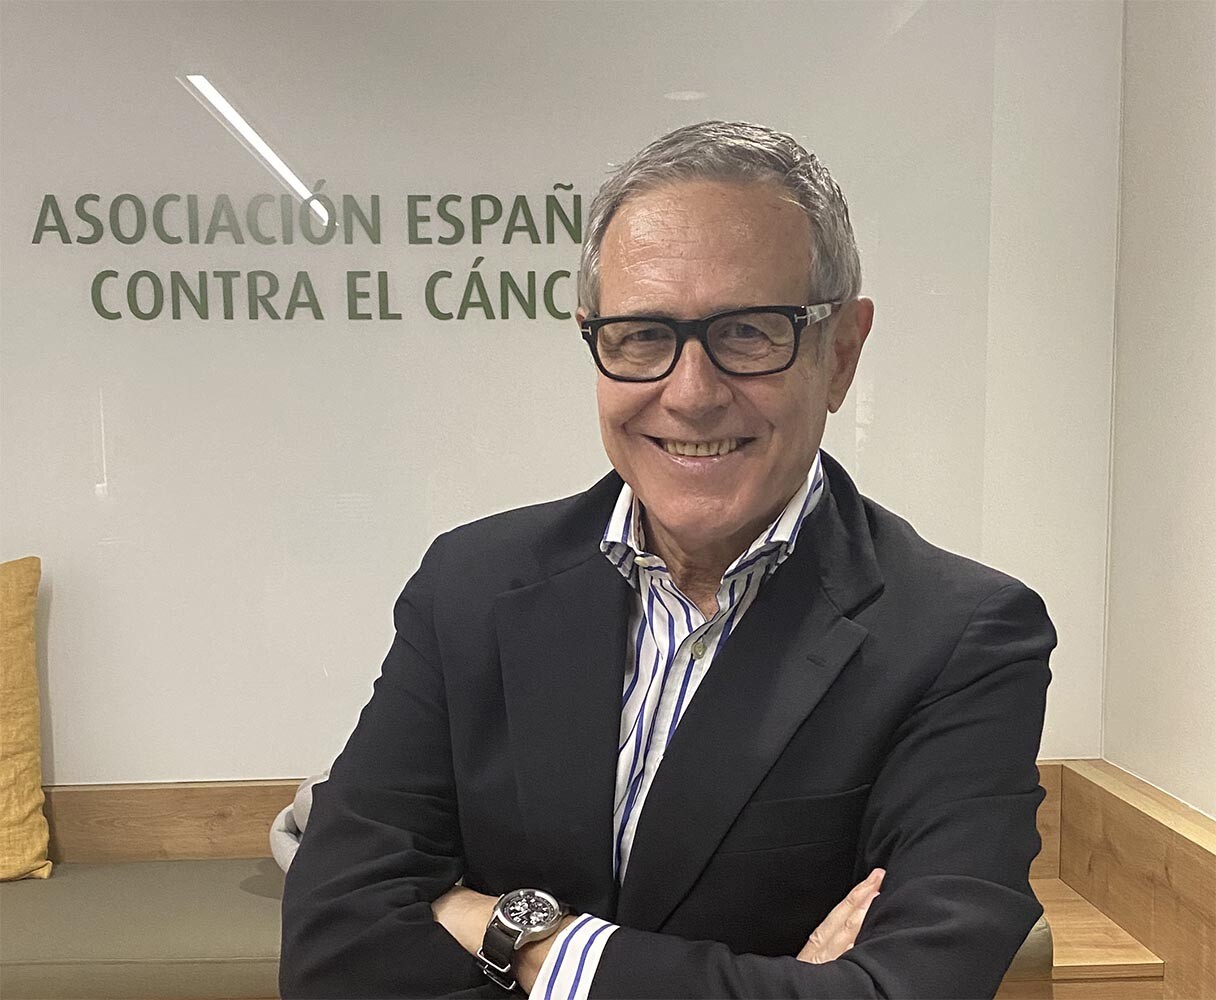 Asociación española contra el cáncer